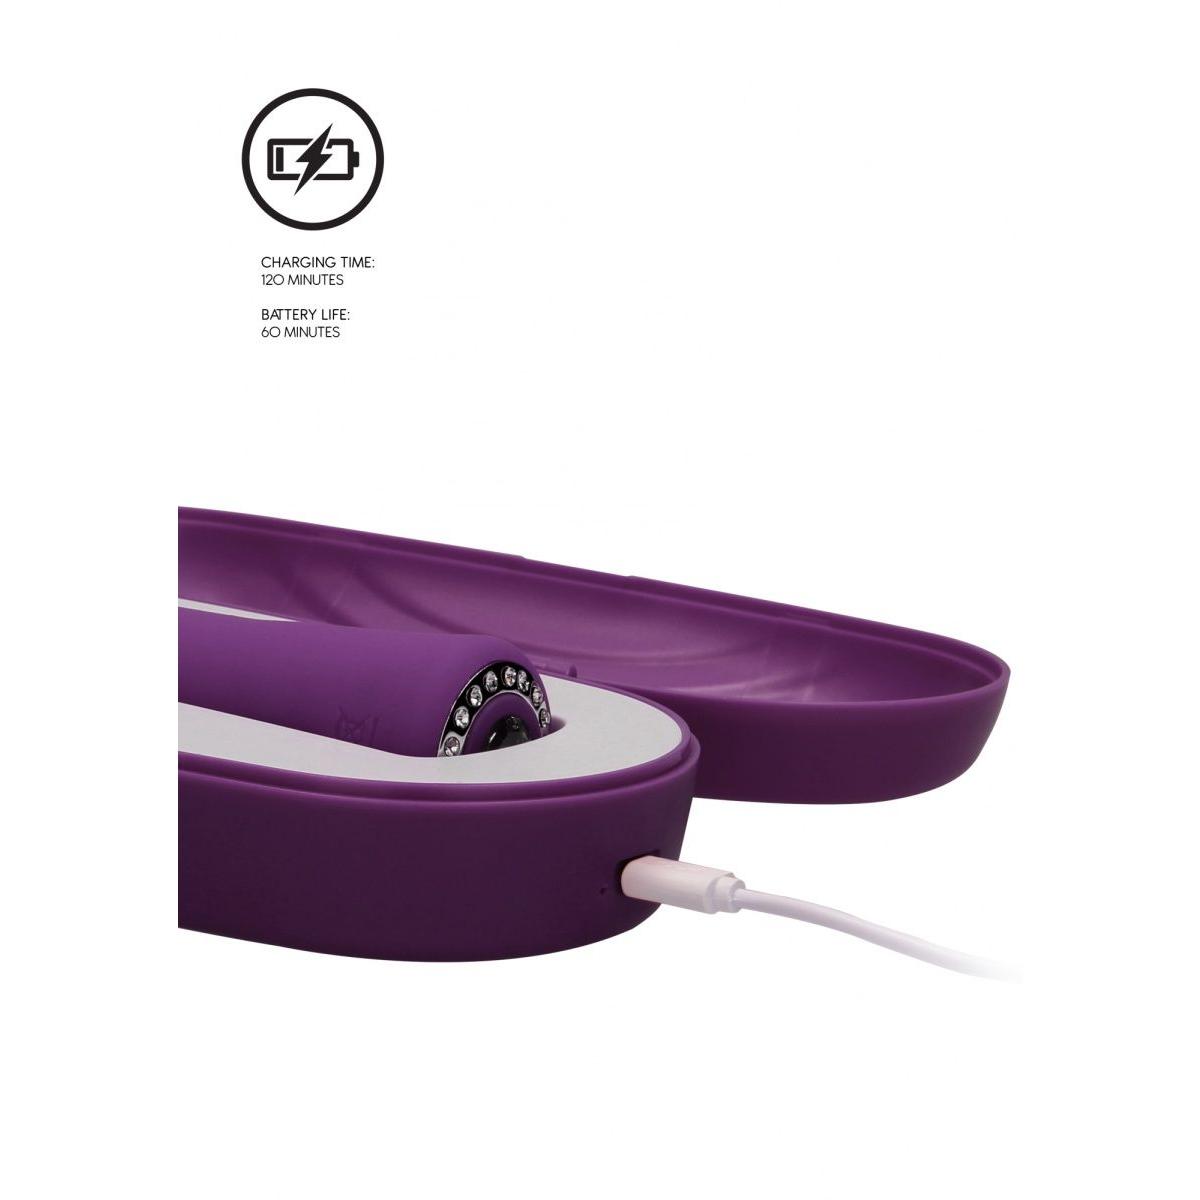 Фиолетовый универсальный массажер Wand Pearl - 20 см.